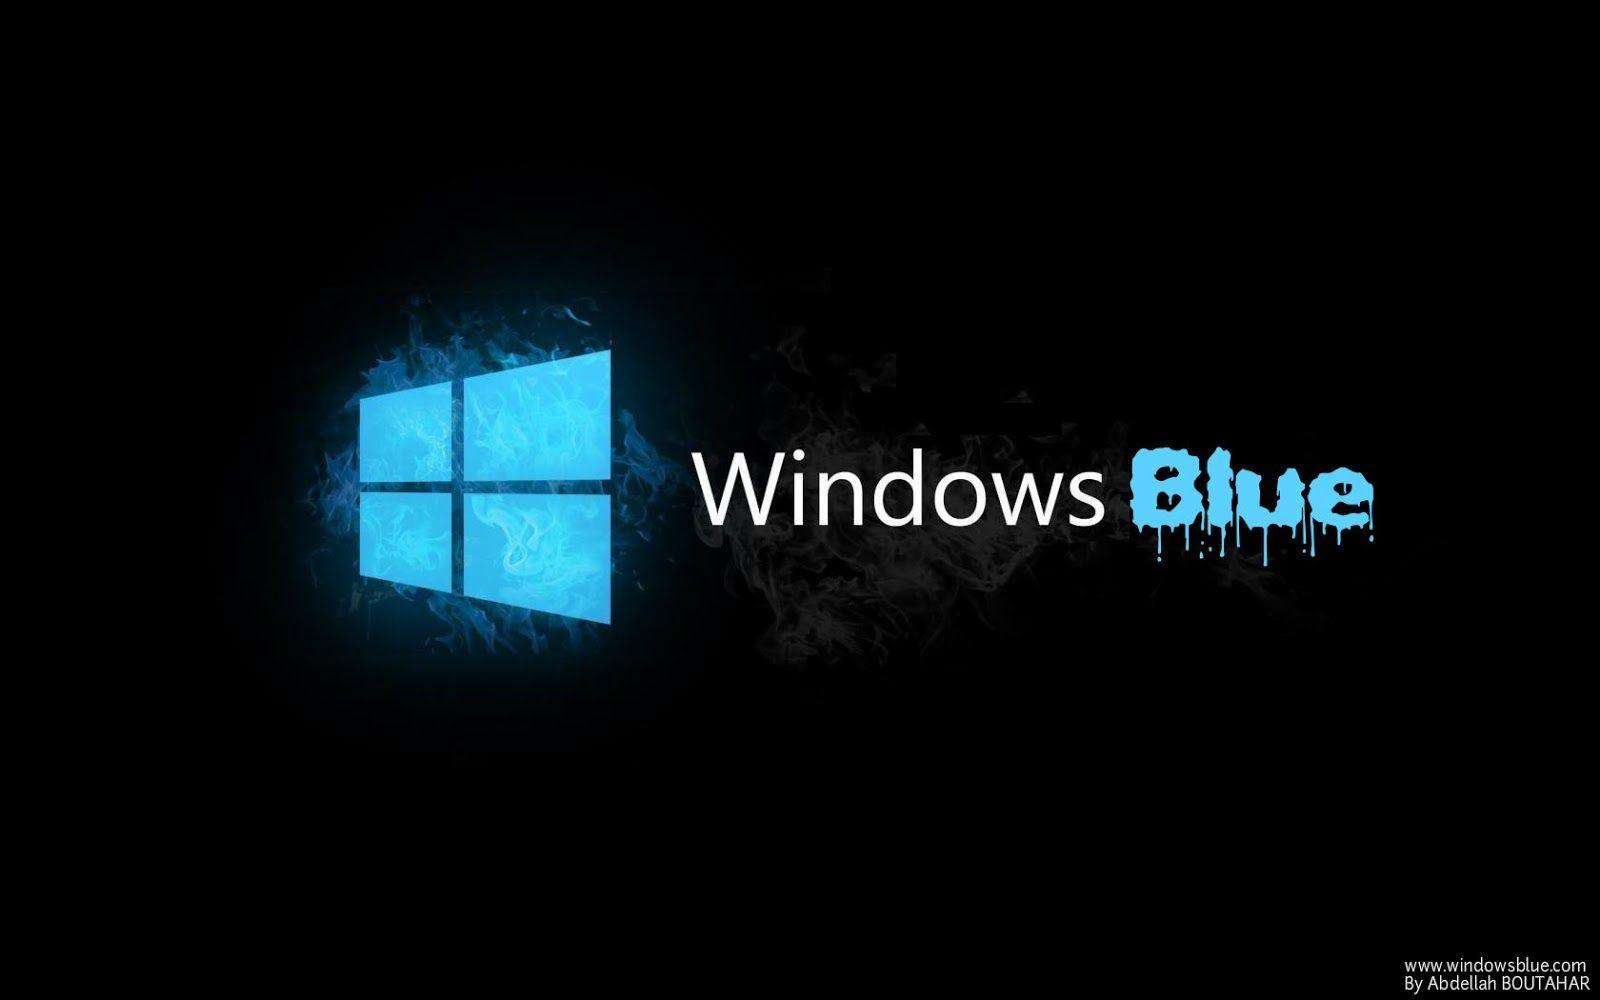 Windows Blue Logo - Icy Windows Blue logo | Windows Blue | Windows, Windows 8, Web ...